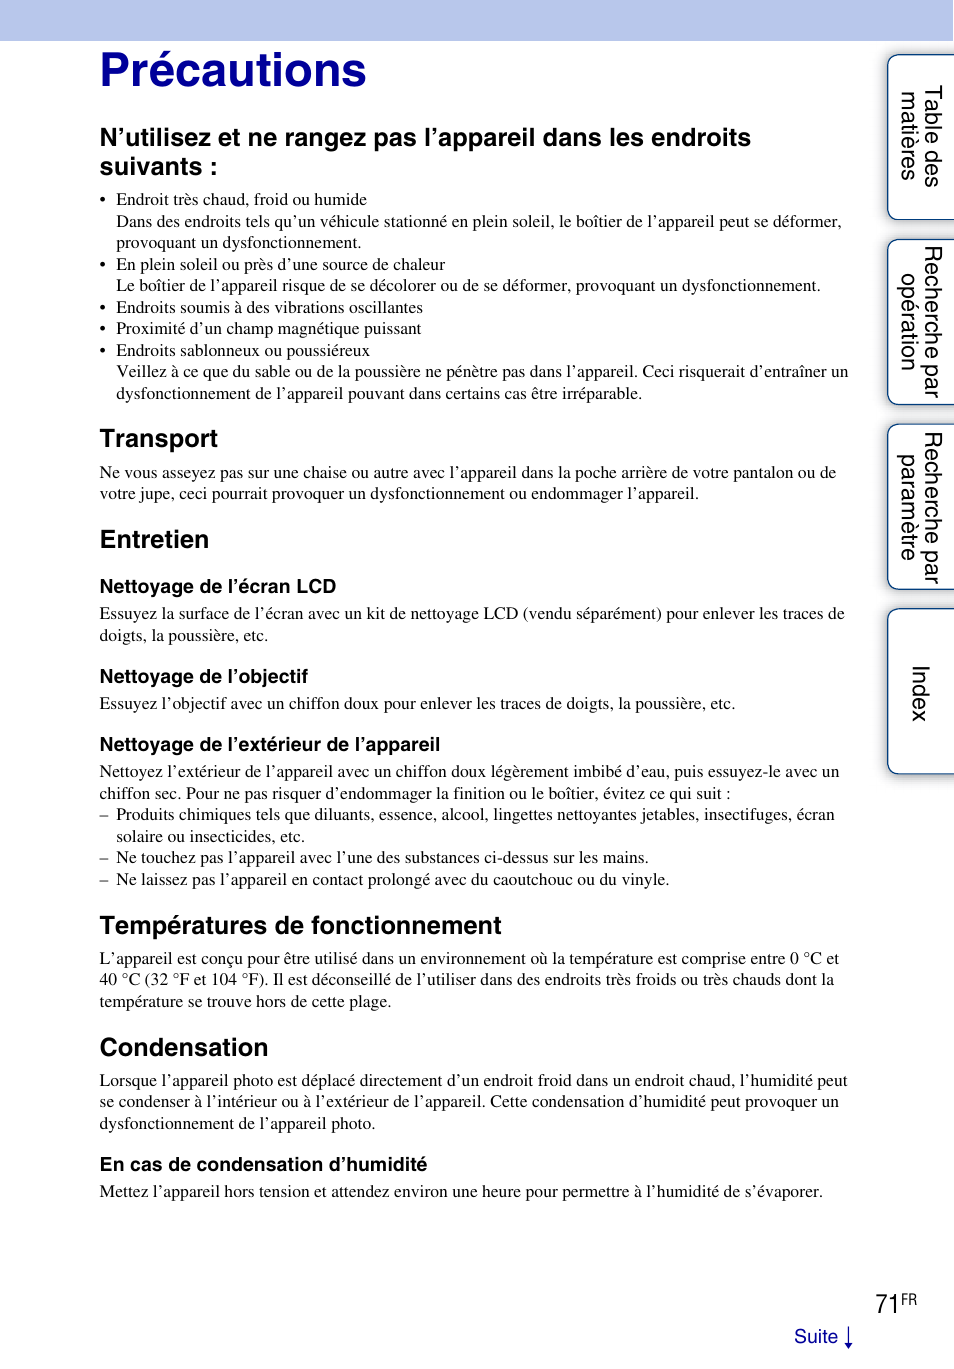 Précautions, Transport, Entretien | Températures de fonctionnement, Condensation | Sony bloggie MHS-TS20 Manuel d'utilisation | Page 71 / 75